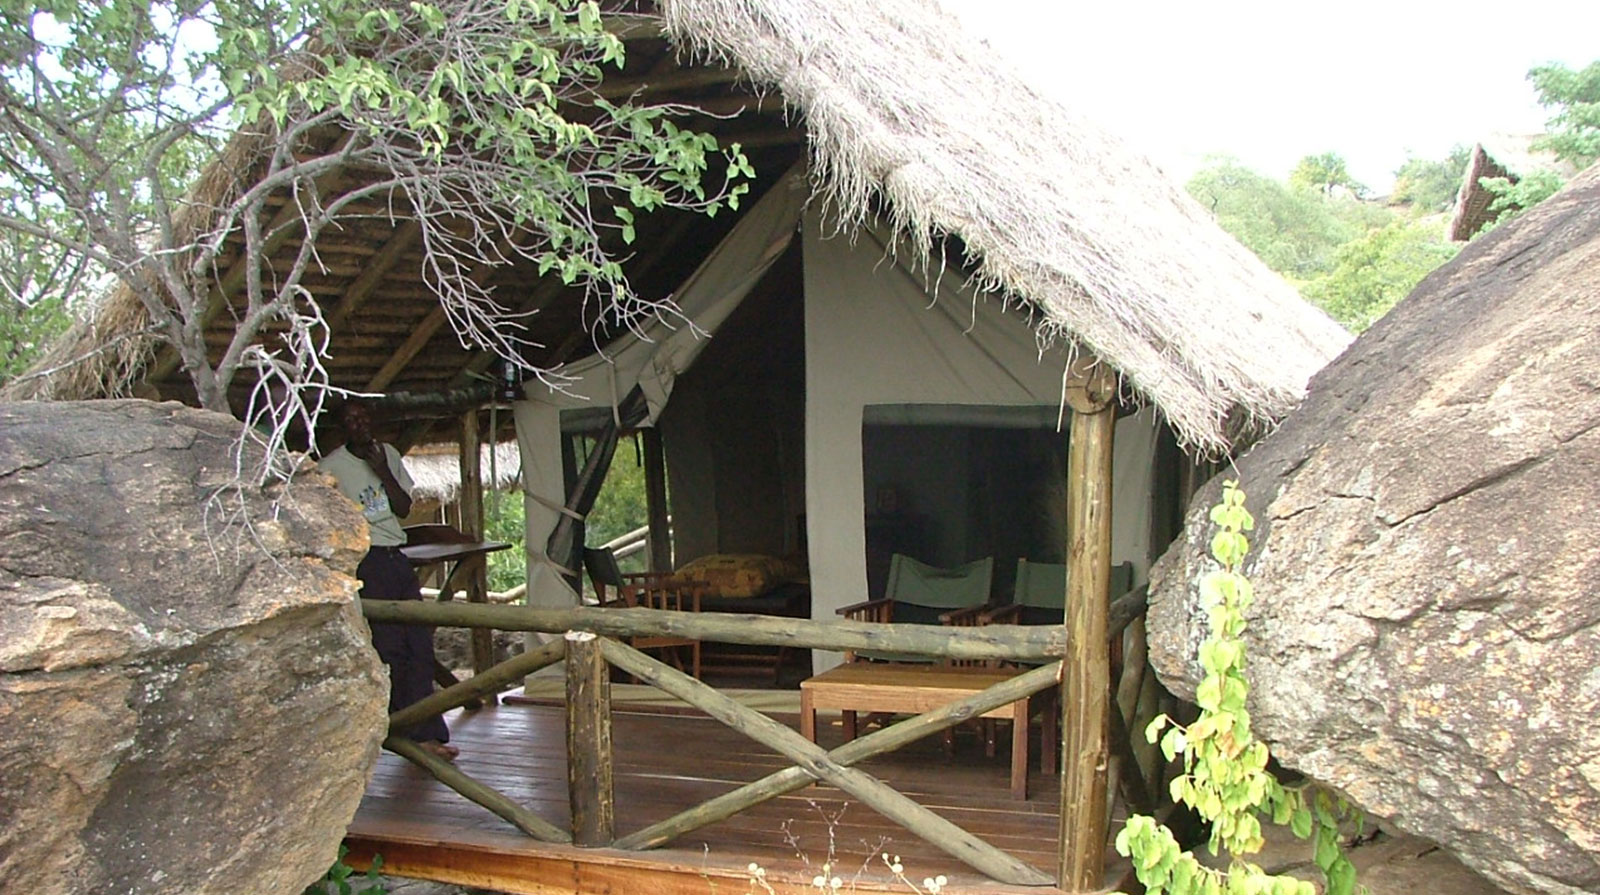 Maweninga Camp - Simple yet elegant
